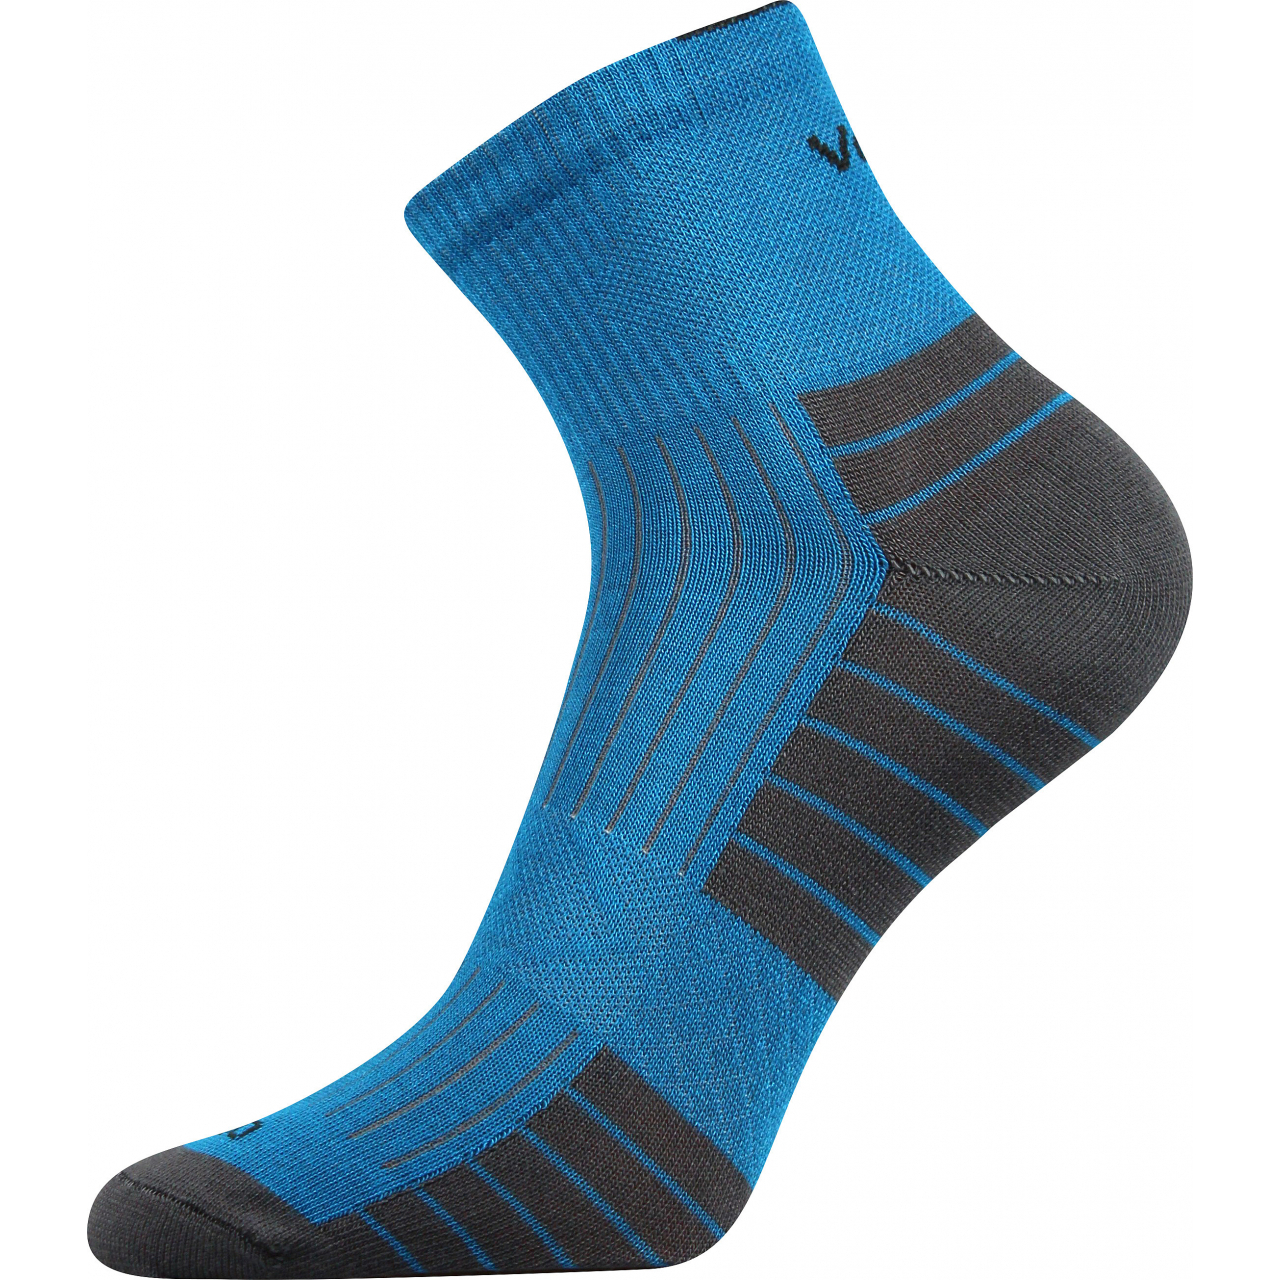 Ponožky bambusové unisex Voxx Belkin - modré-šedé, 43-46